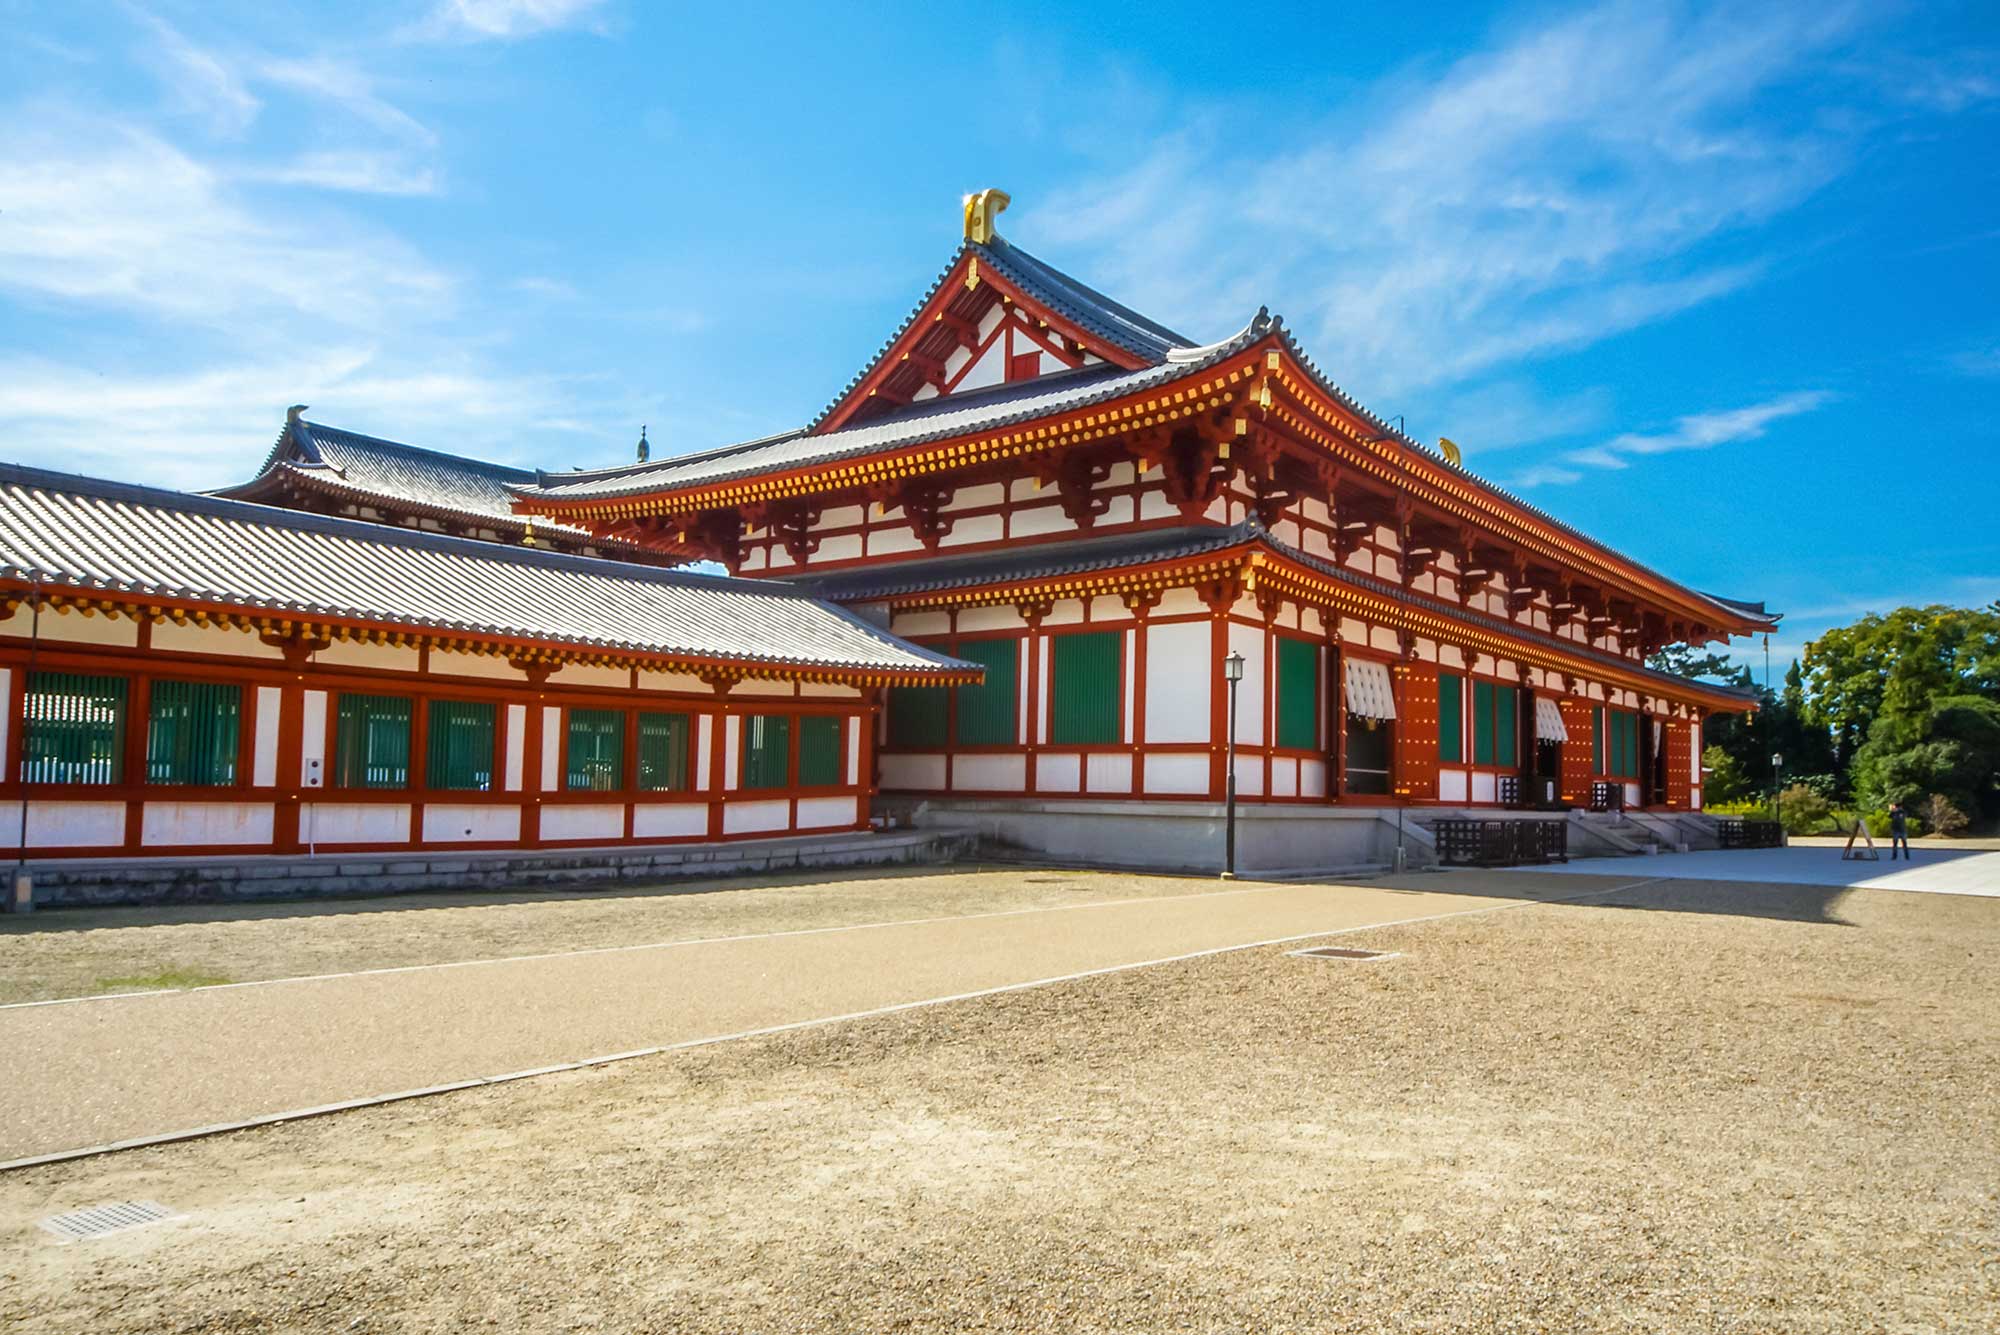 悠久の歴史を感じる古都 奈良